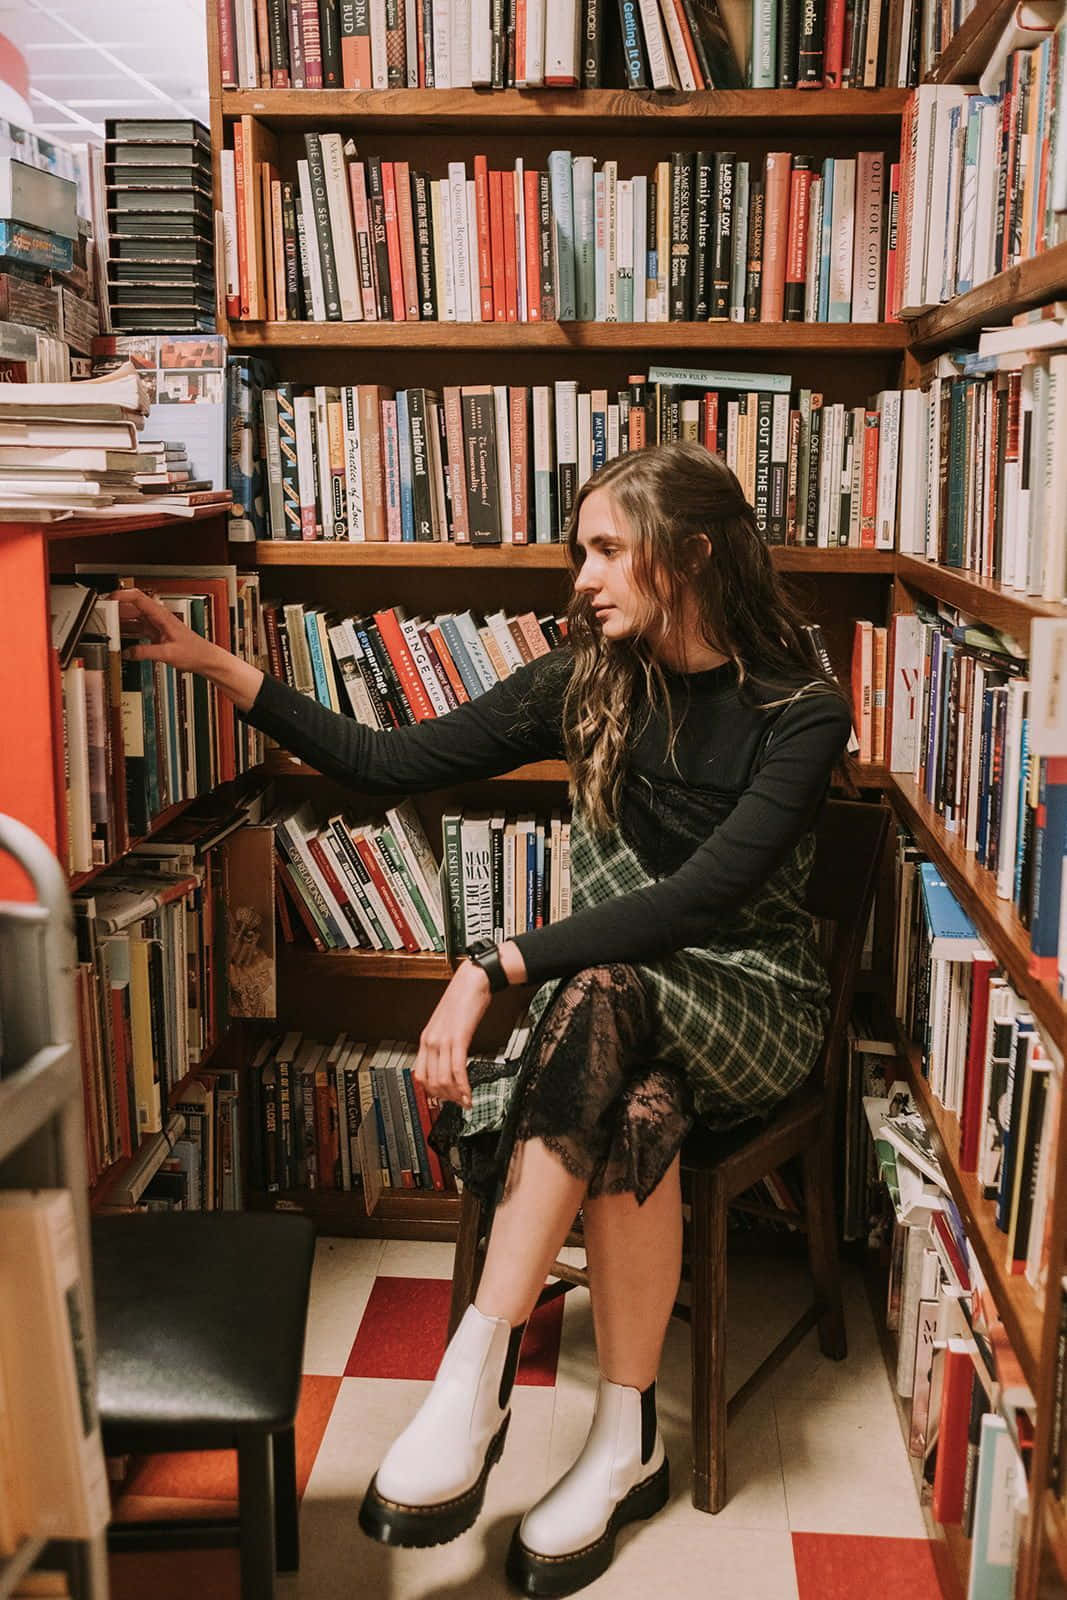 Imagemde Uma Garota Sozinha Em Uma Biblioteca.